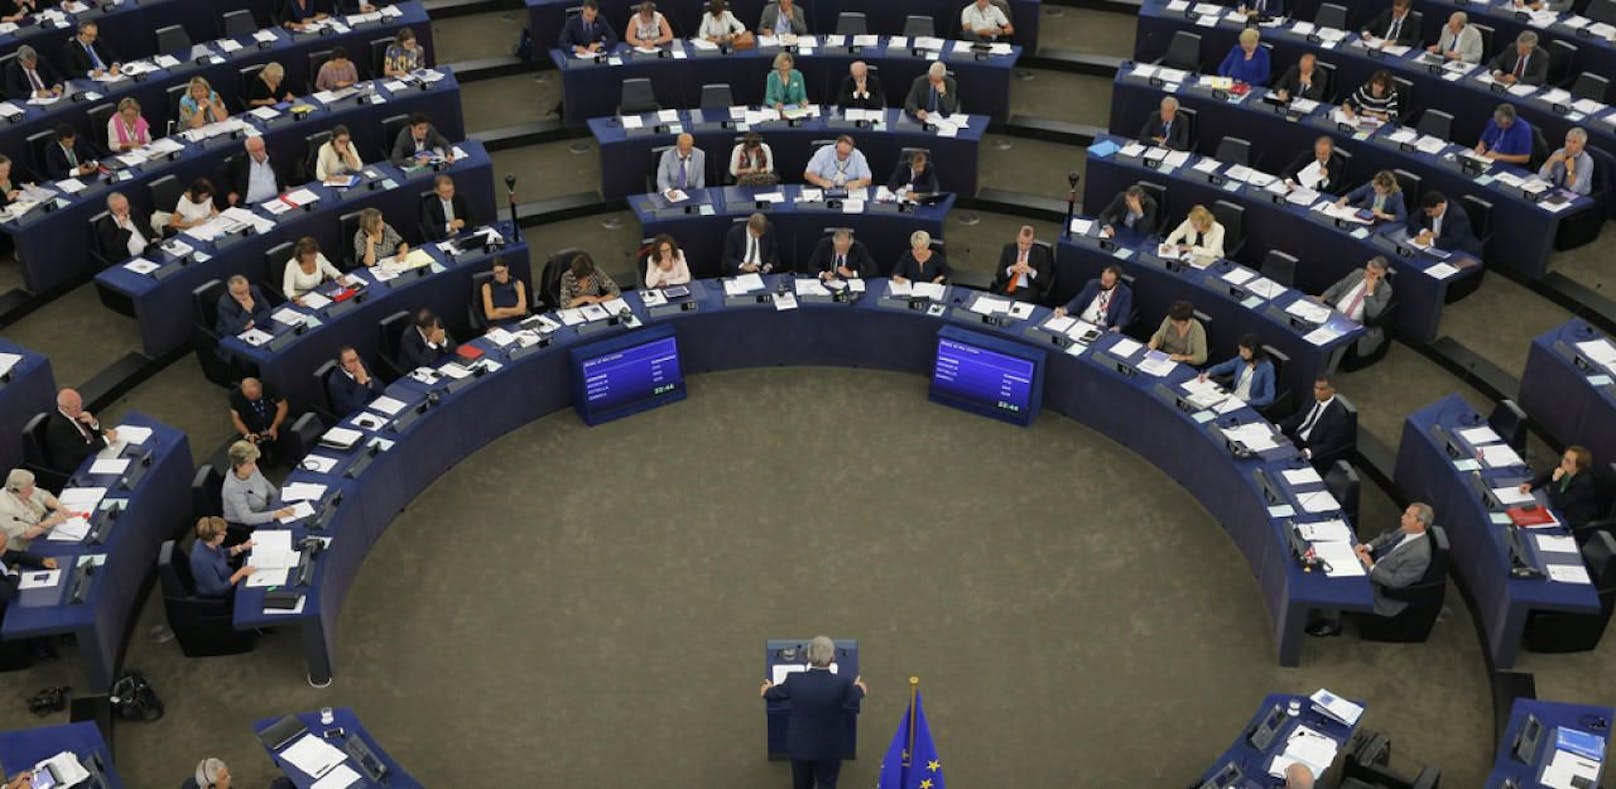 Sexuelle Belästigung auch im EU-Parlament